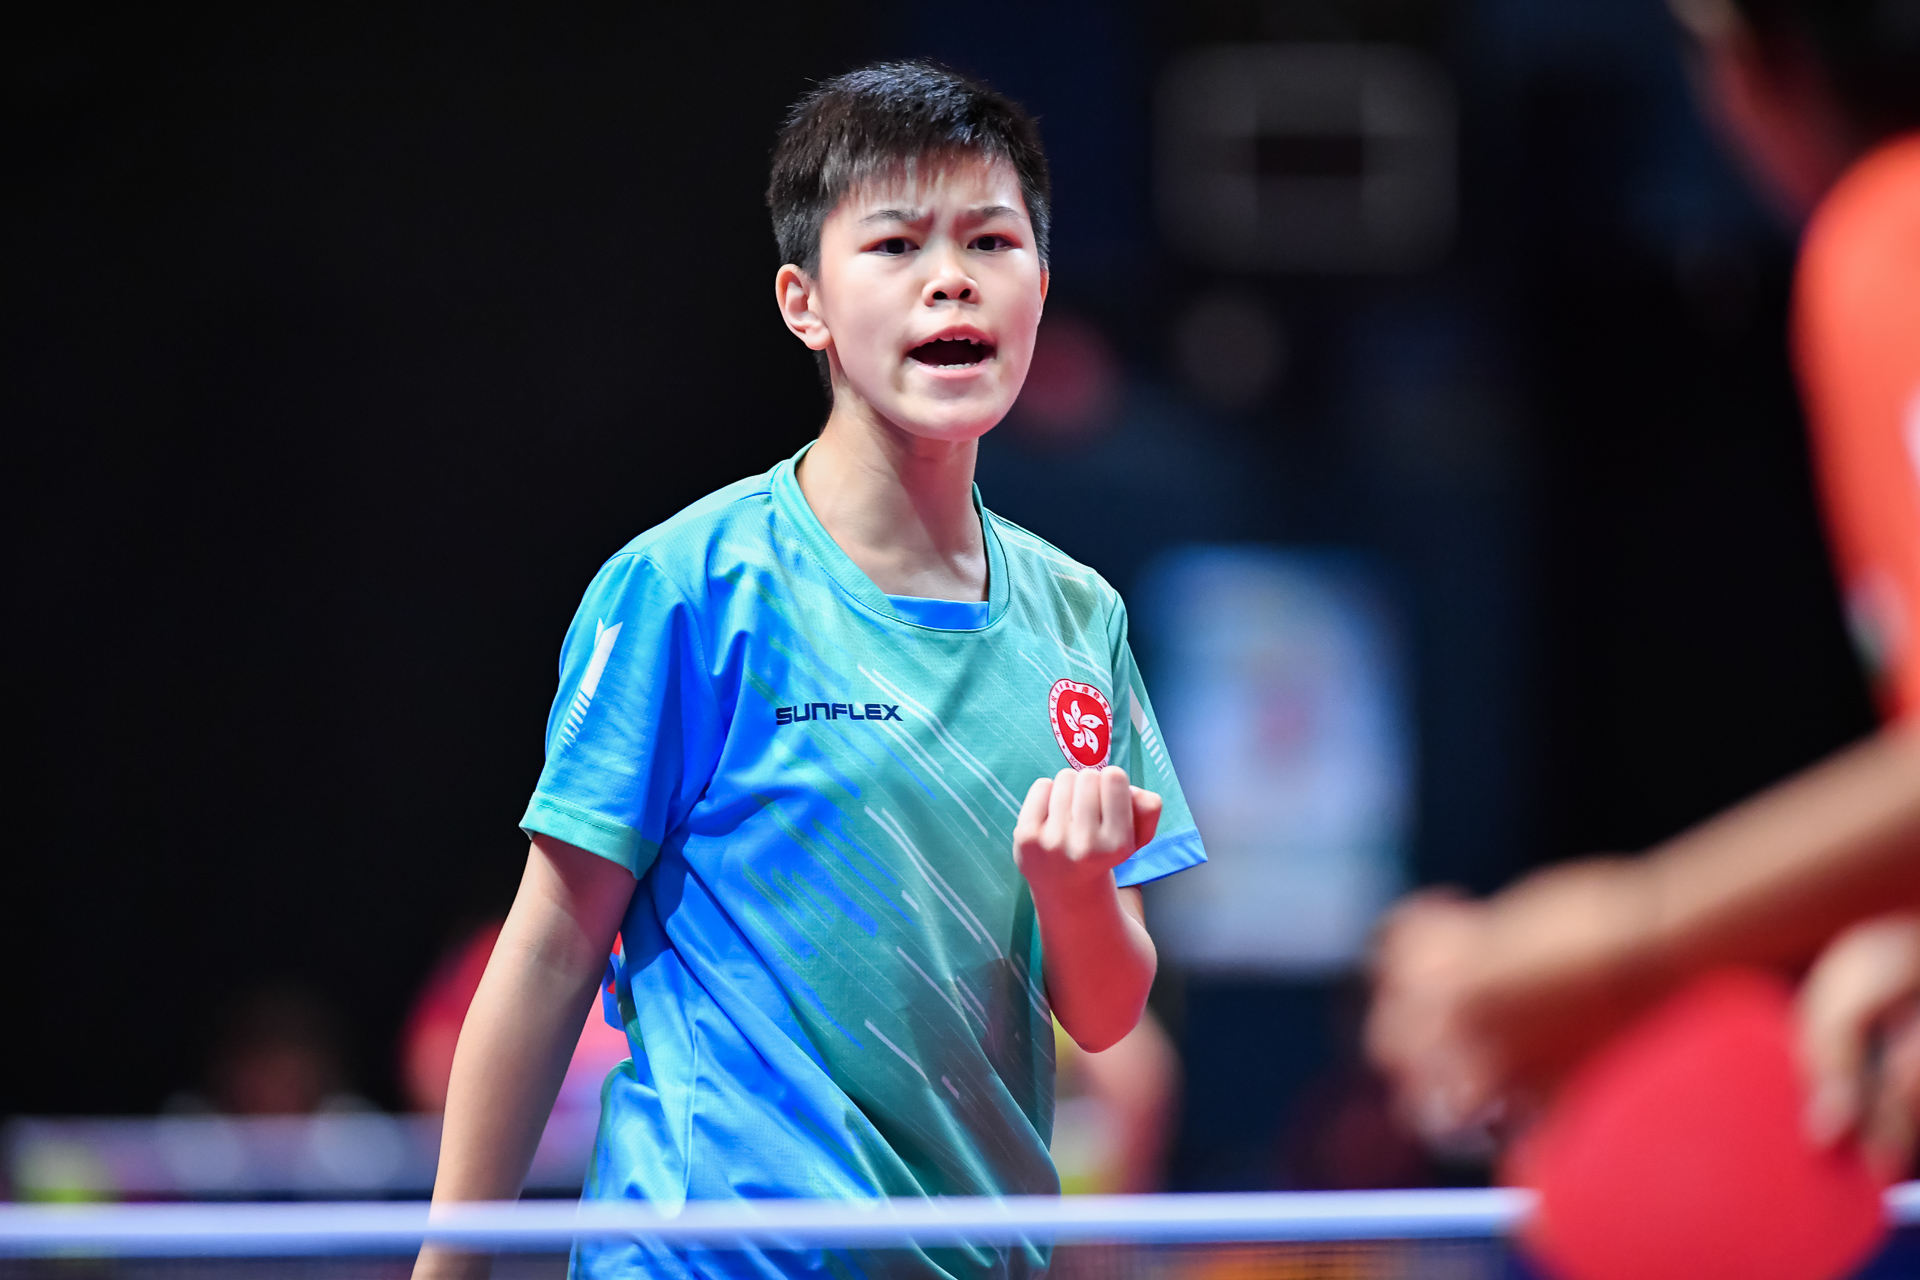 2019 恒生香港青少年公開賽 - 第一個賽事日